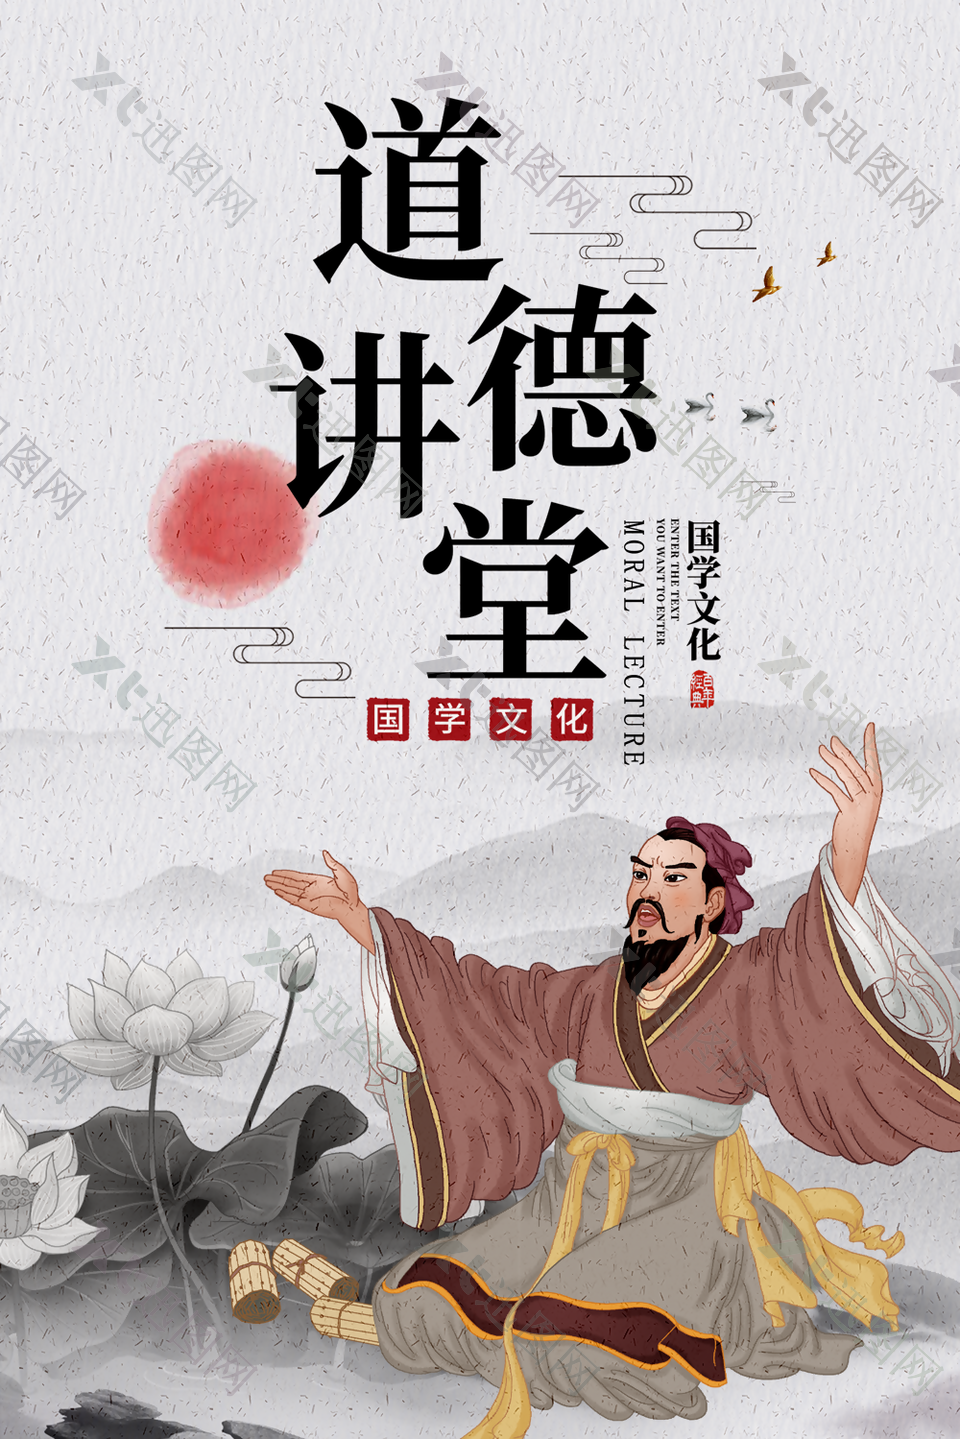 古典中国风道德讲堂国学文化宣传海报设计